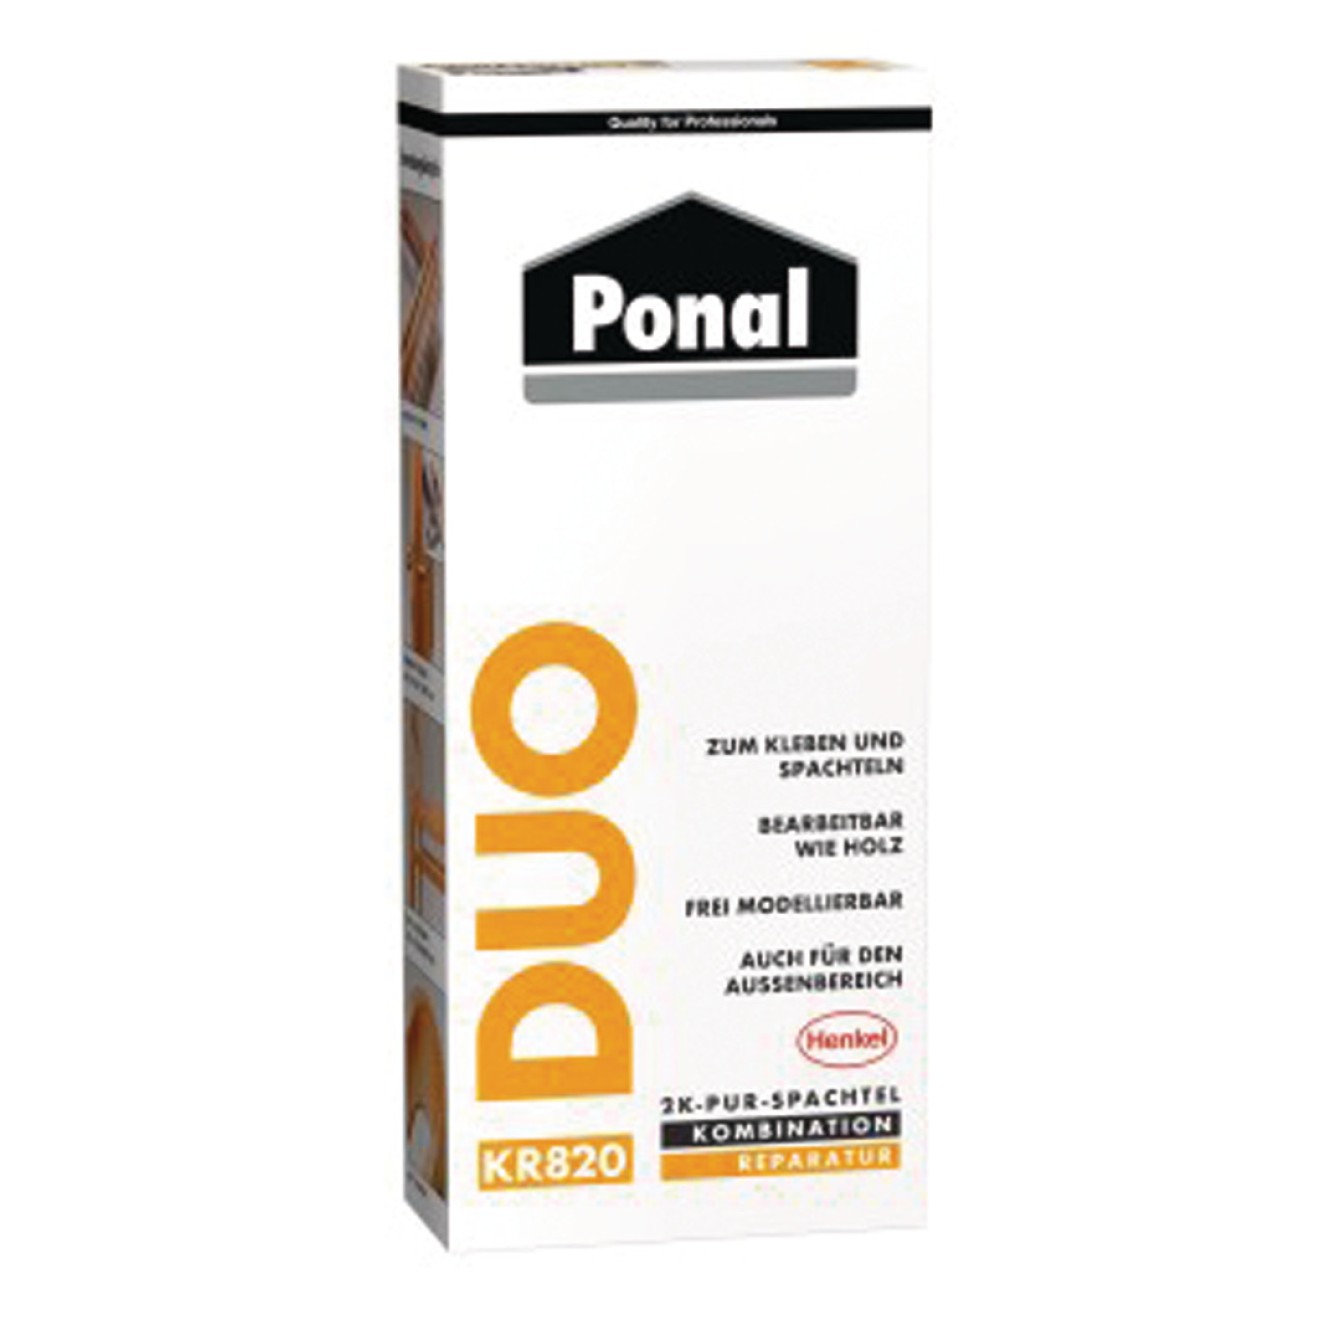 Ponal Duo 2K-PUR-Spachtel 315gr.